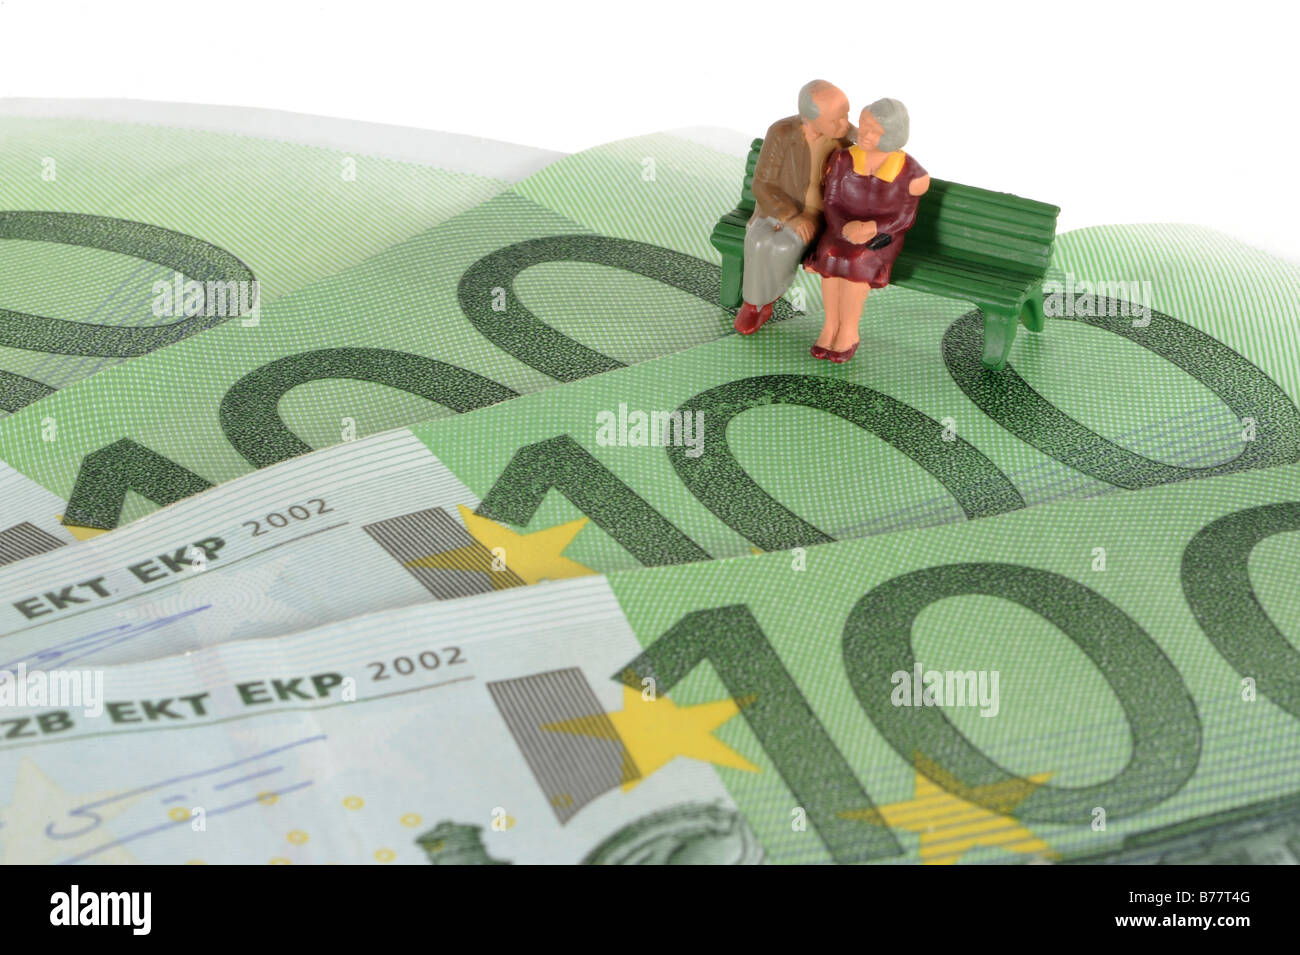 Le figure di due anziani seduti sulle banconote in euro, immagine simbolica per il piano pensionistico, il pensionamento Foto Stock